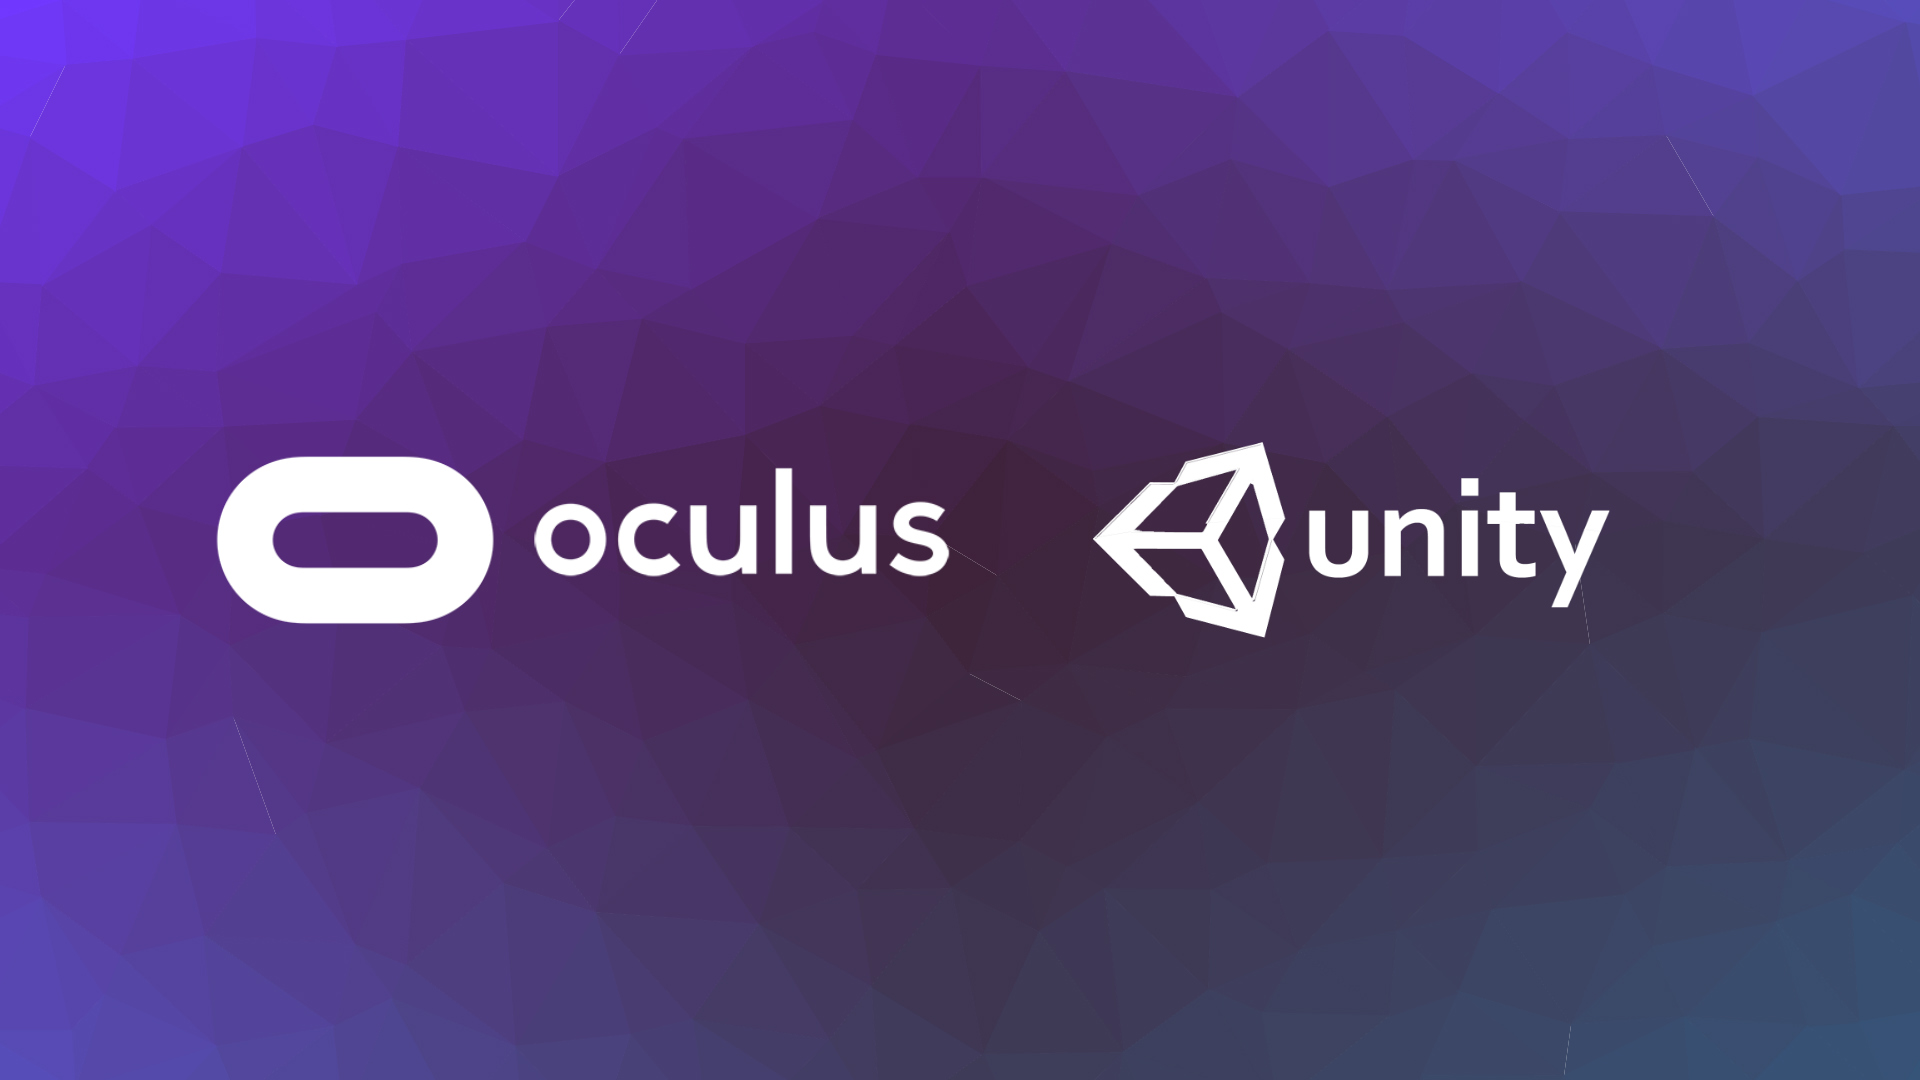 oculus rift s unity